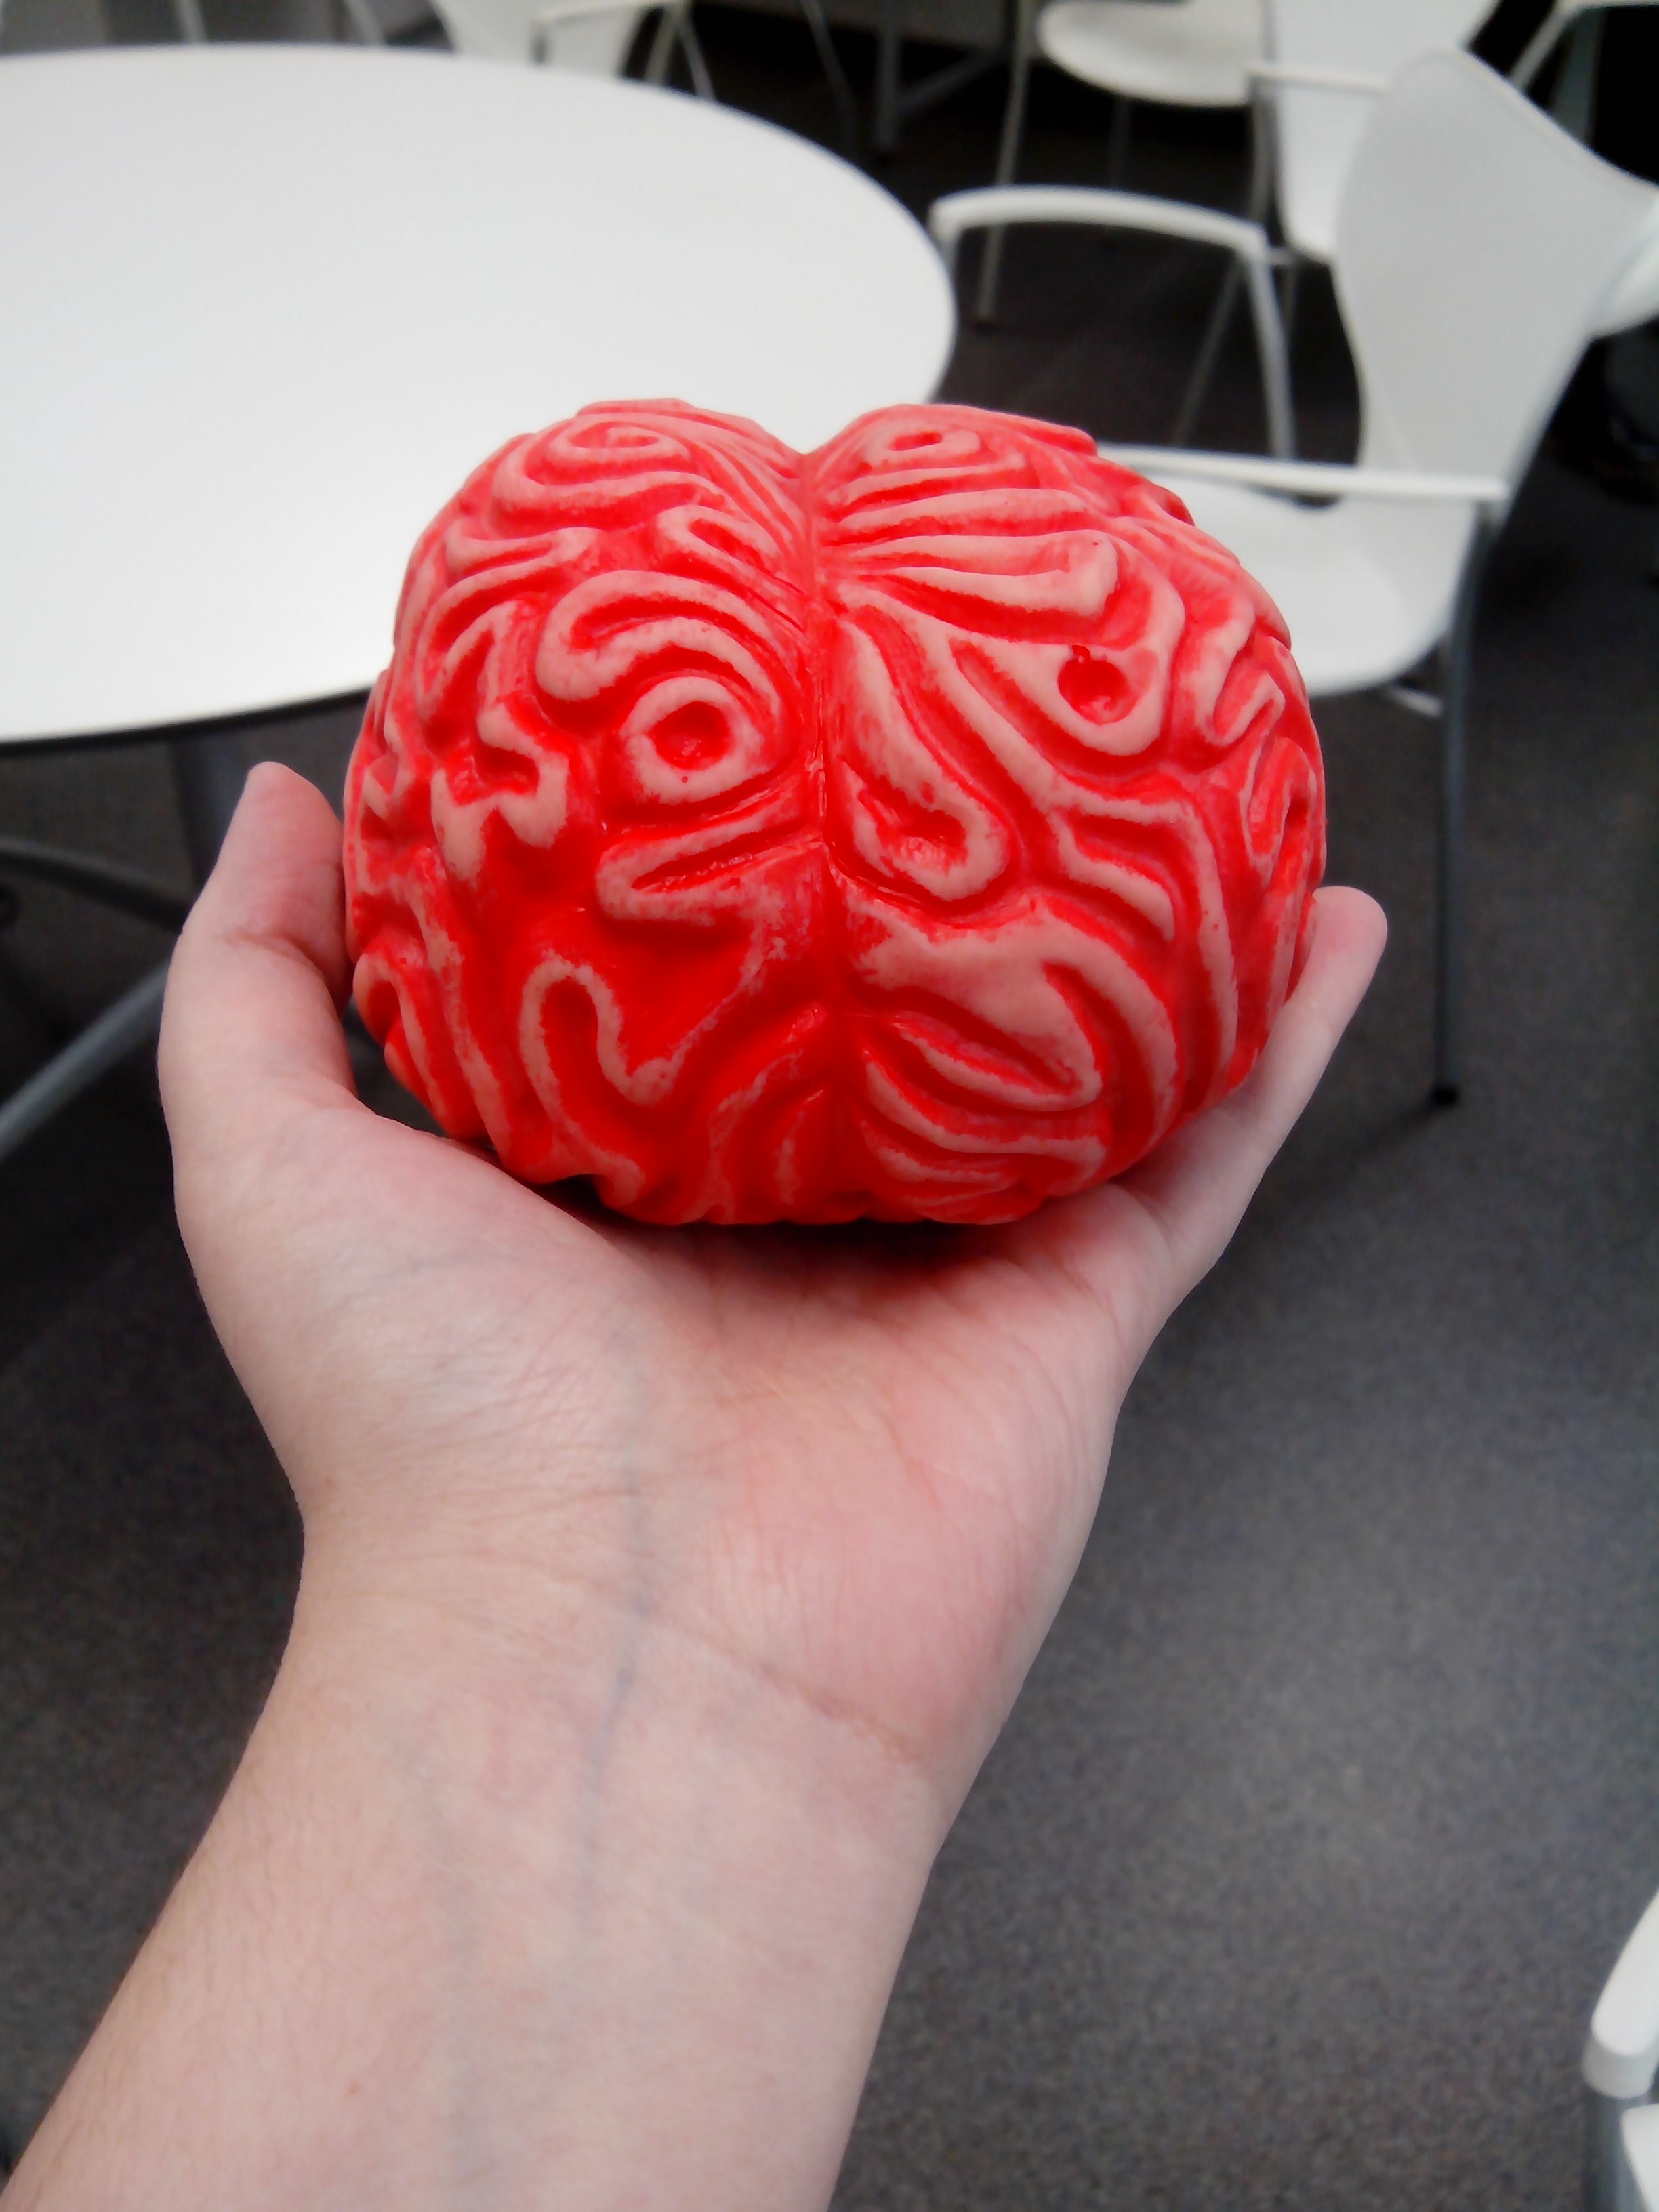 La Universidad de Salamanca invita a descubrir los misterios del cerebro